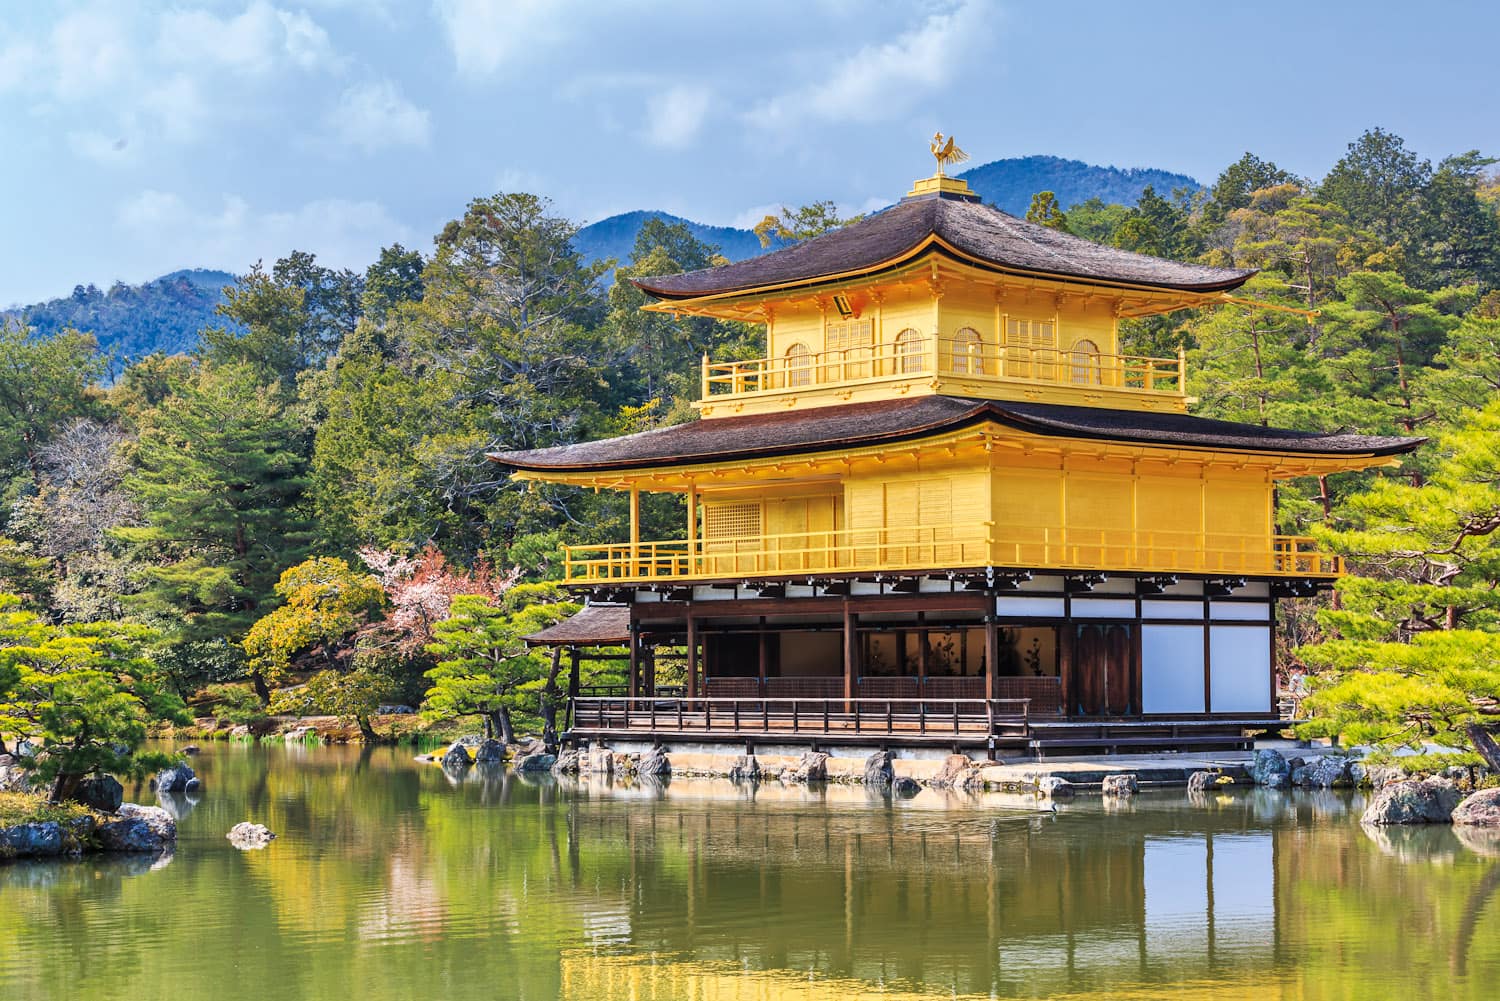 Kyoto's Kinkaku-ji (Golden Pavilion)